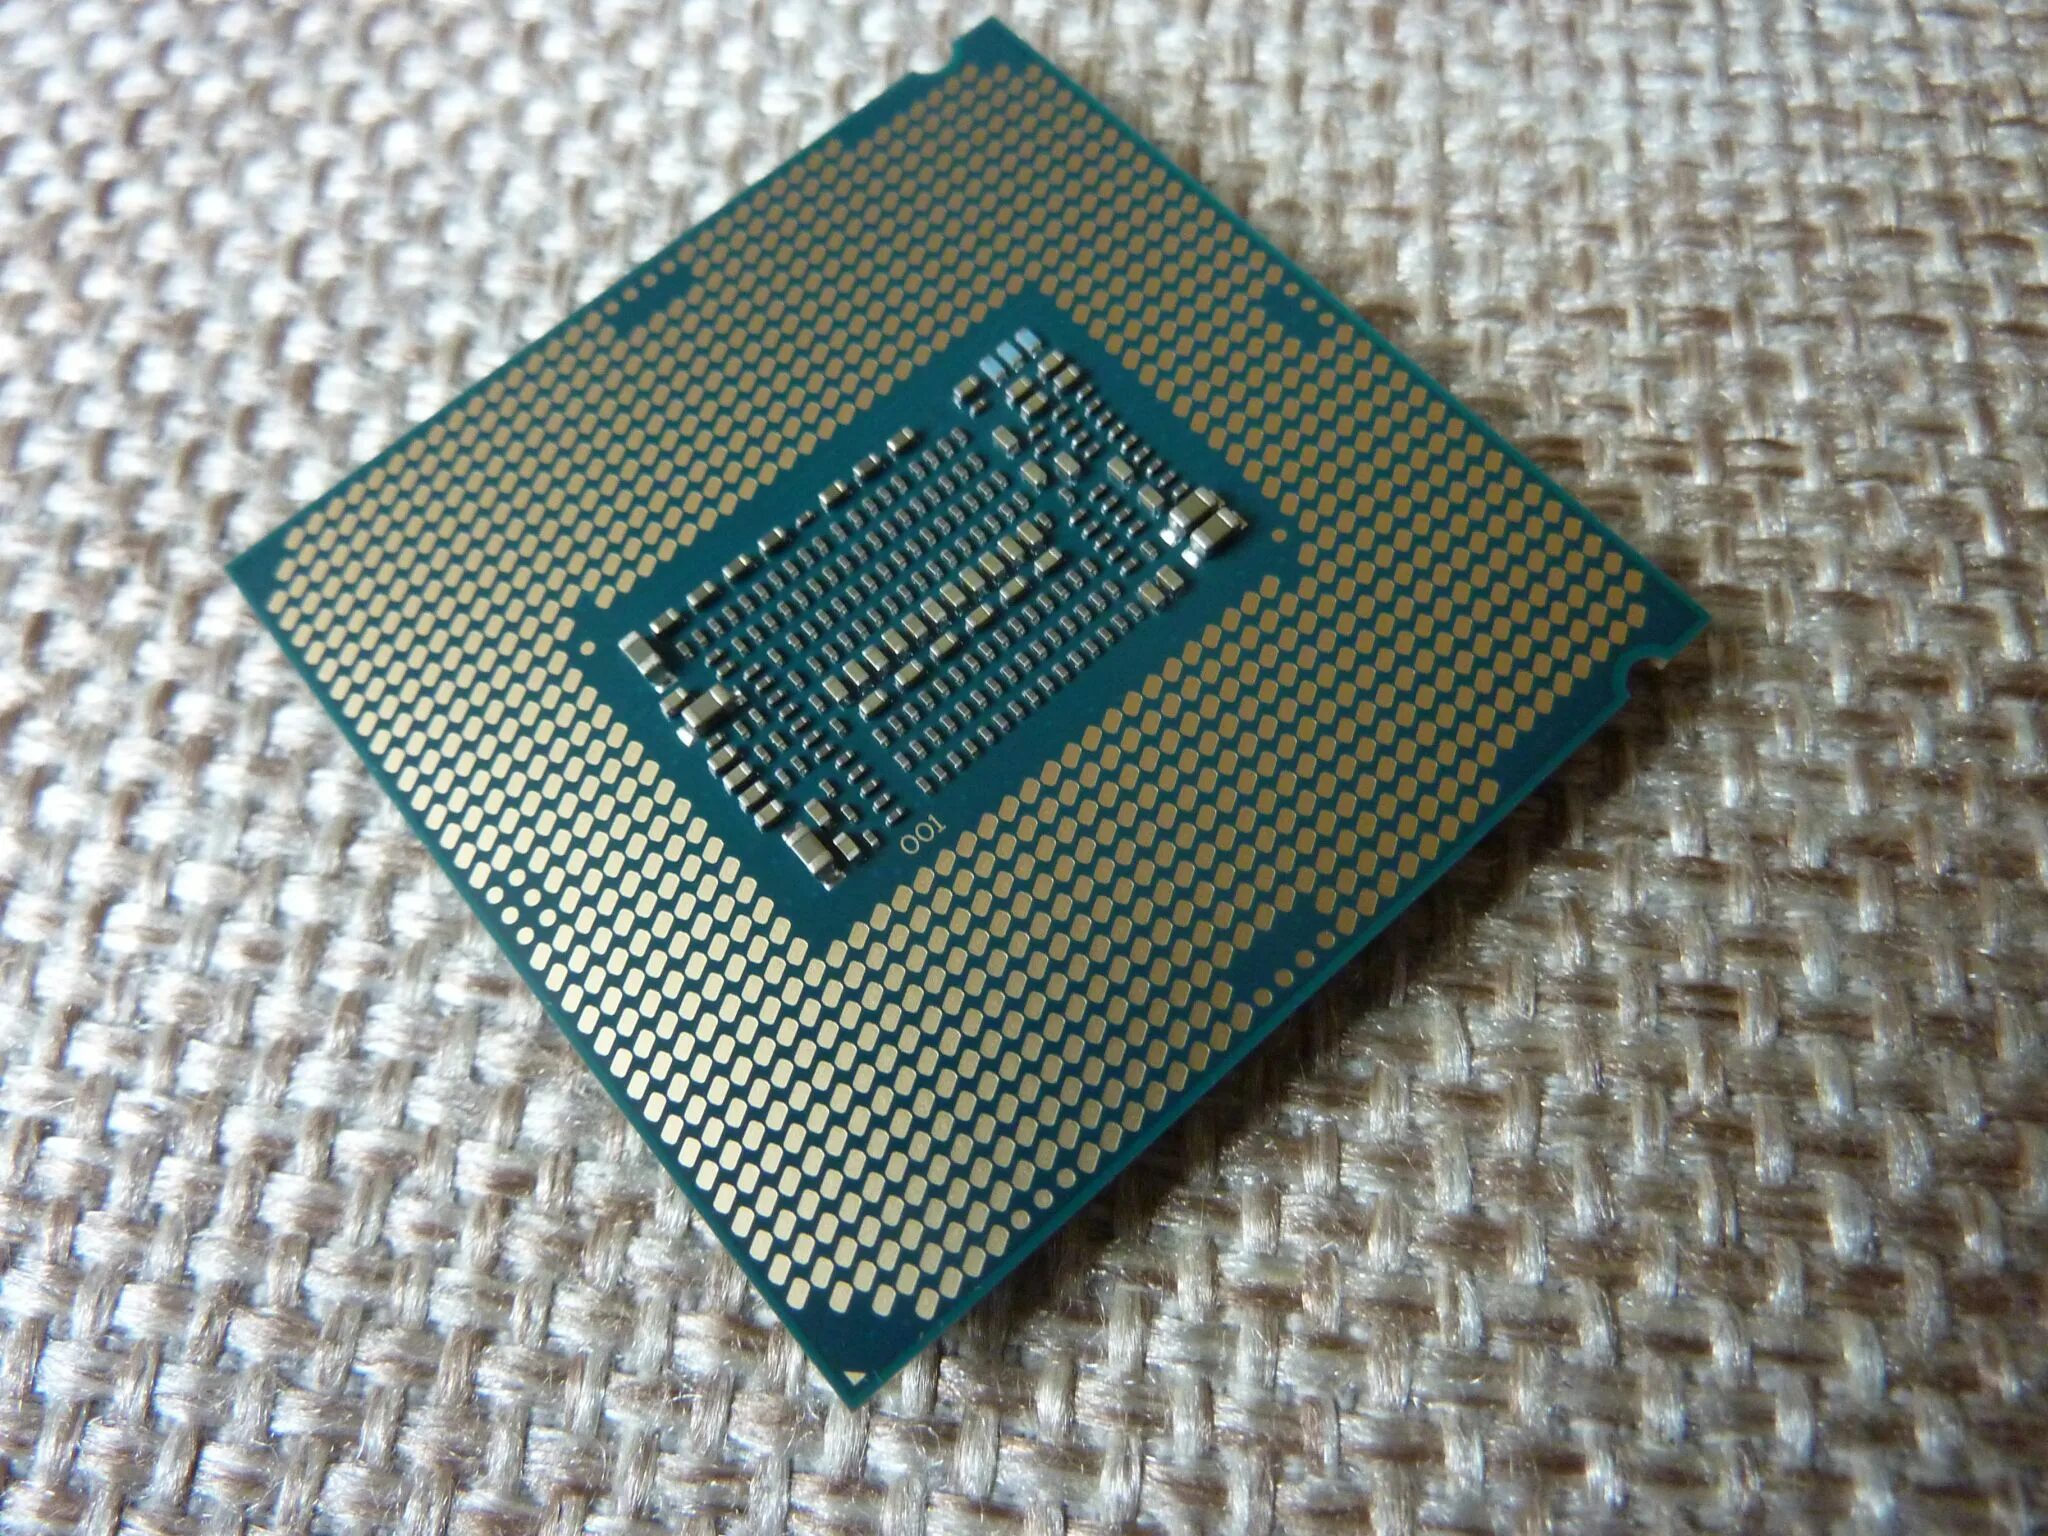 Lga 1151 процессоры i7. I5 9400f. Core i5 9400. Процессор Intel Core i5-9400f. Процессор Intel Core i5-9400 OEM.